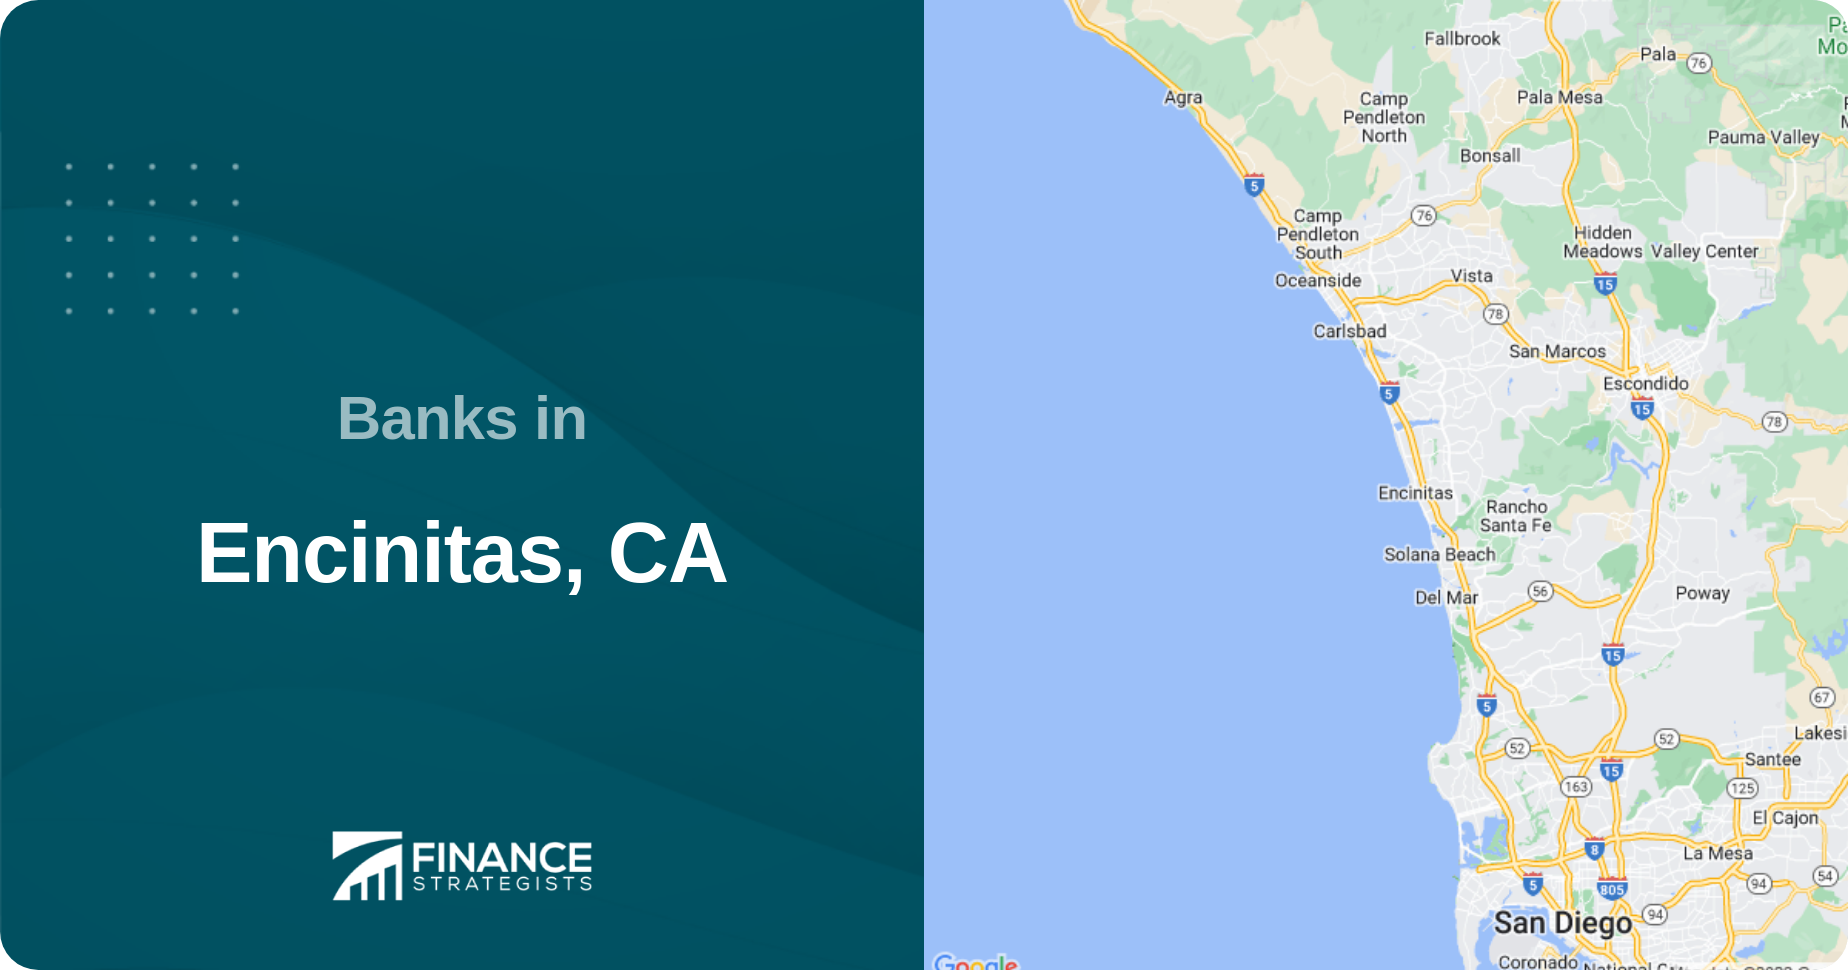 Banks in Encinitas, CA